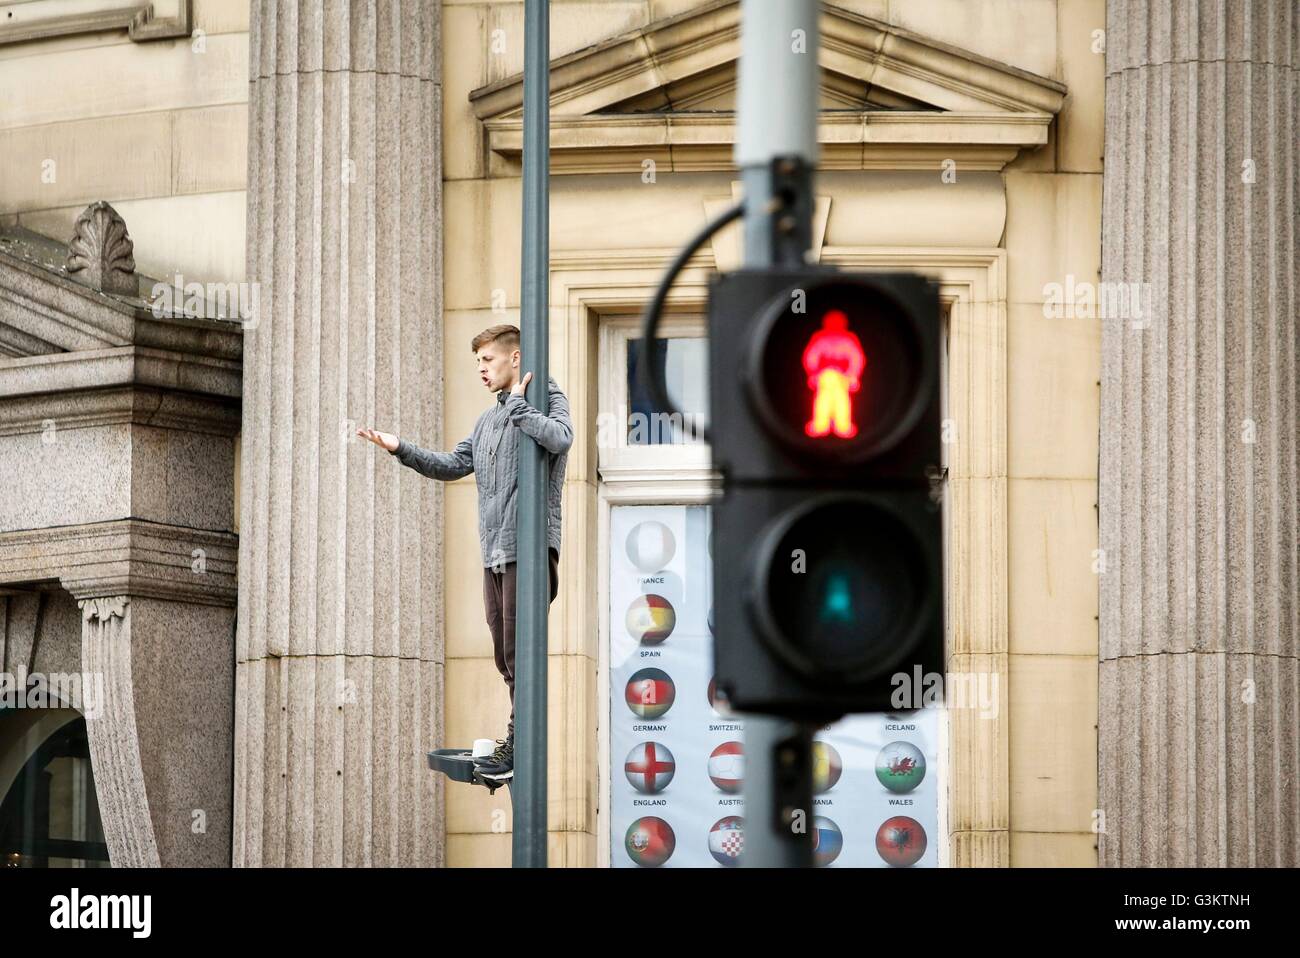 Un homme se tient sur un lampadaire en place de la ville de Leeds, attirer le trafic à l'arrêt après la route au-dessous de lui a été fermé par la police. Banque D'Images